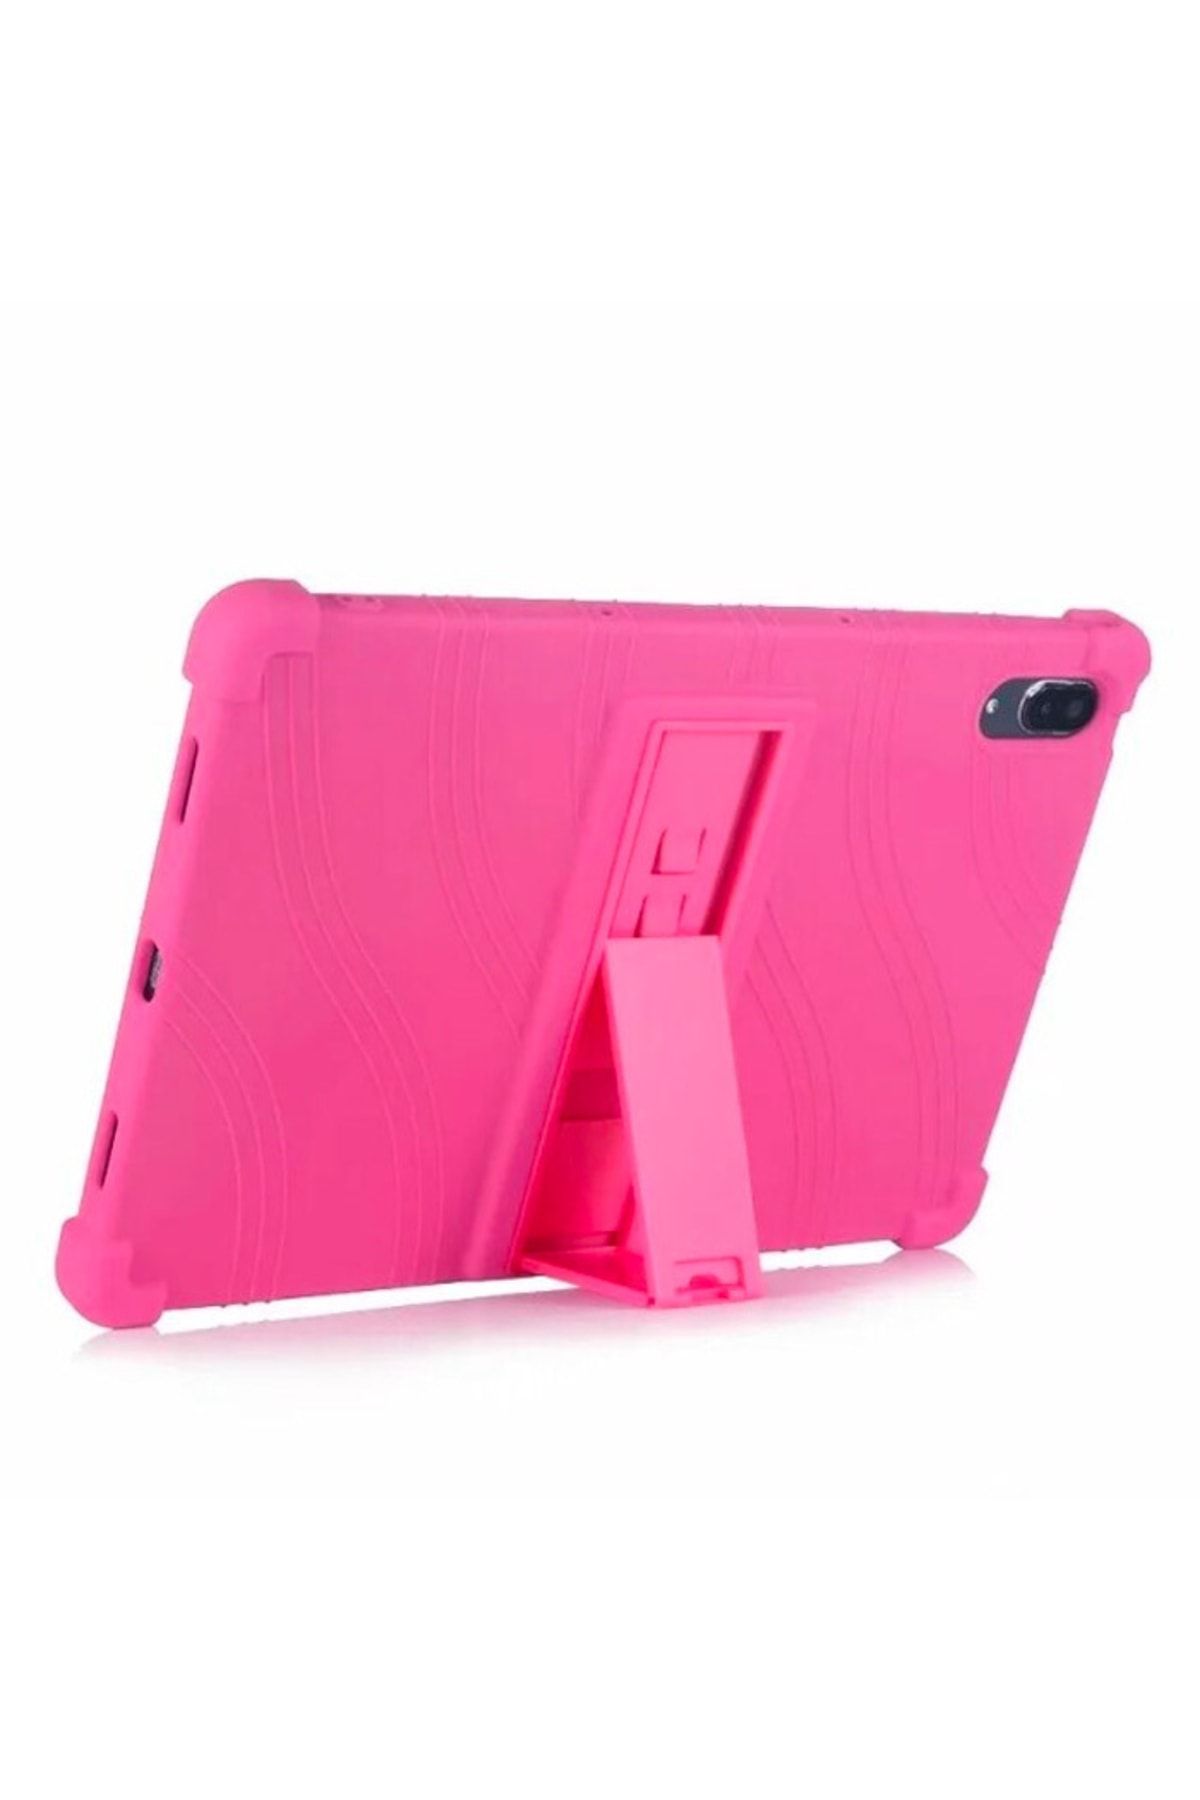 Ally Mobile Ally Lenovo Tab P11 Pro Tb-j706 Standlı Silikon Kılıf Tablet Kılıfı Fuşya